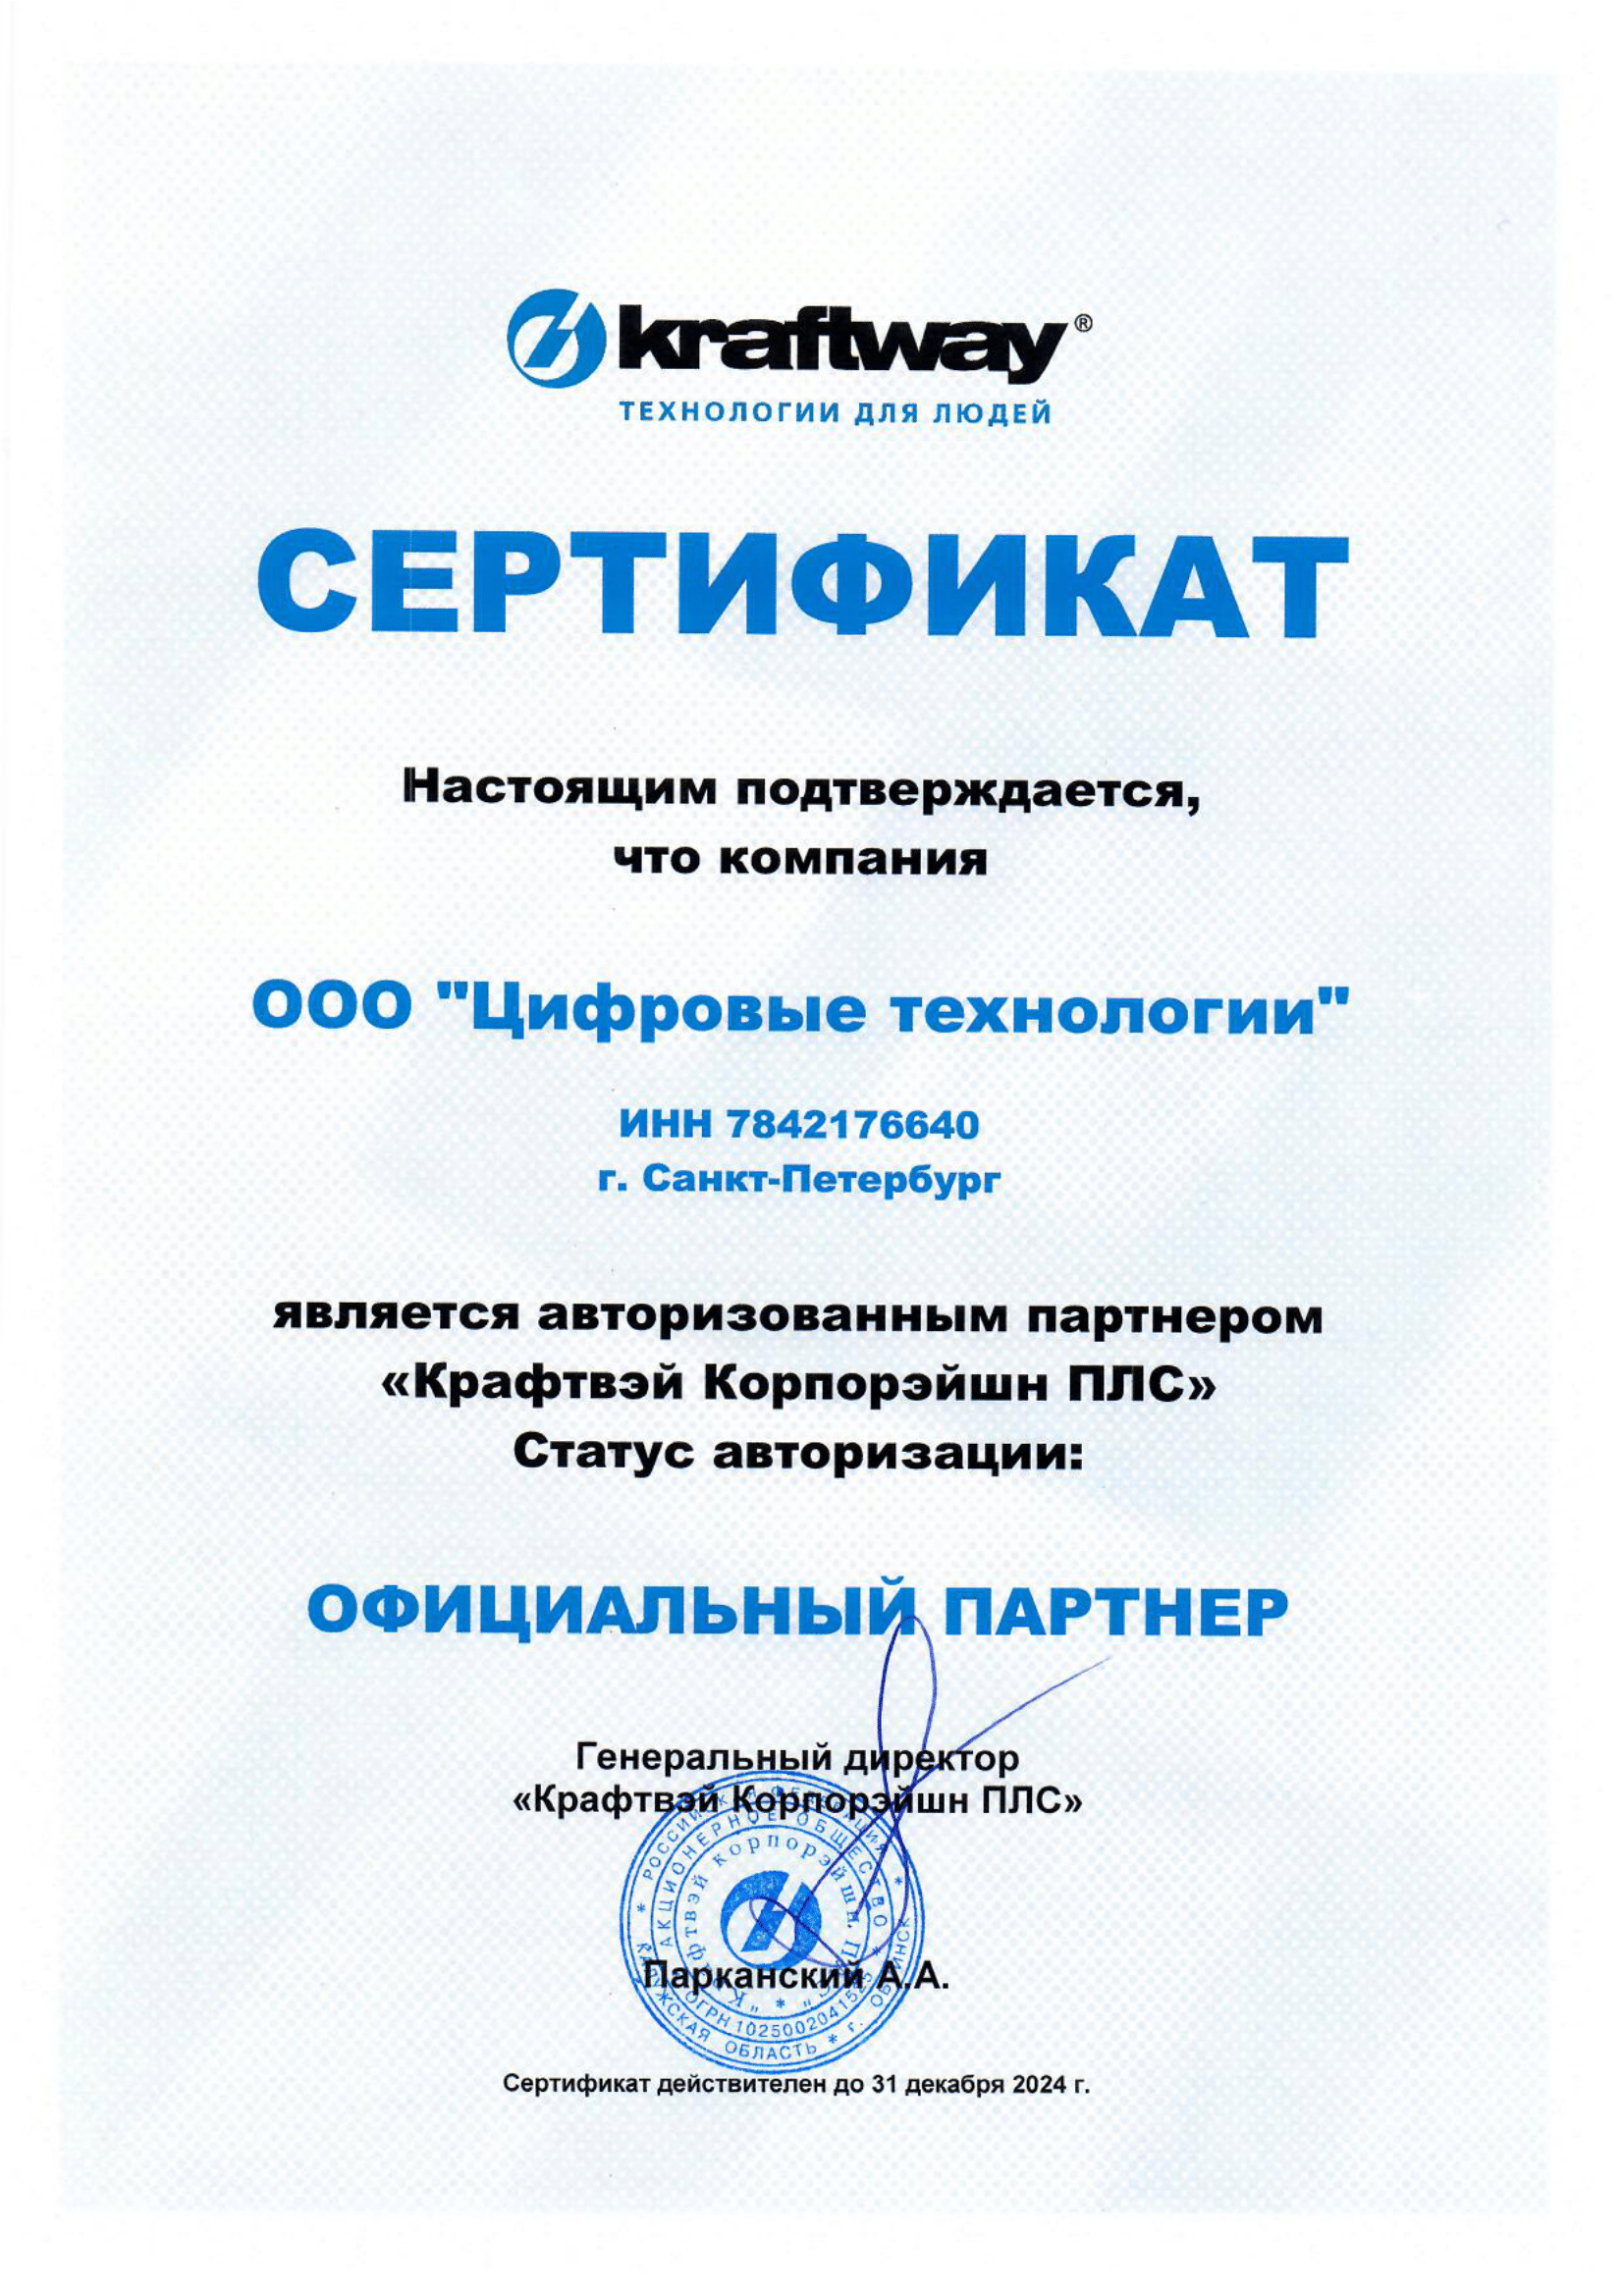 Сертификат Kraftway